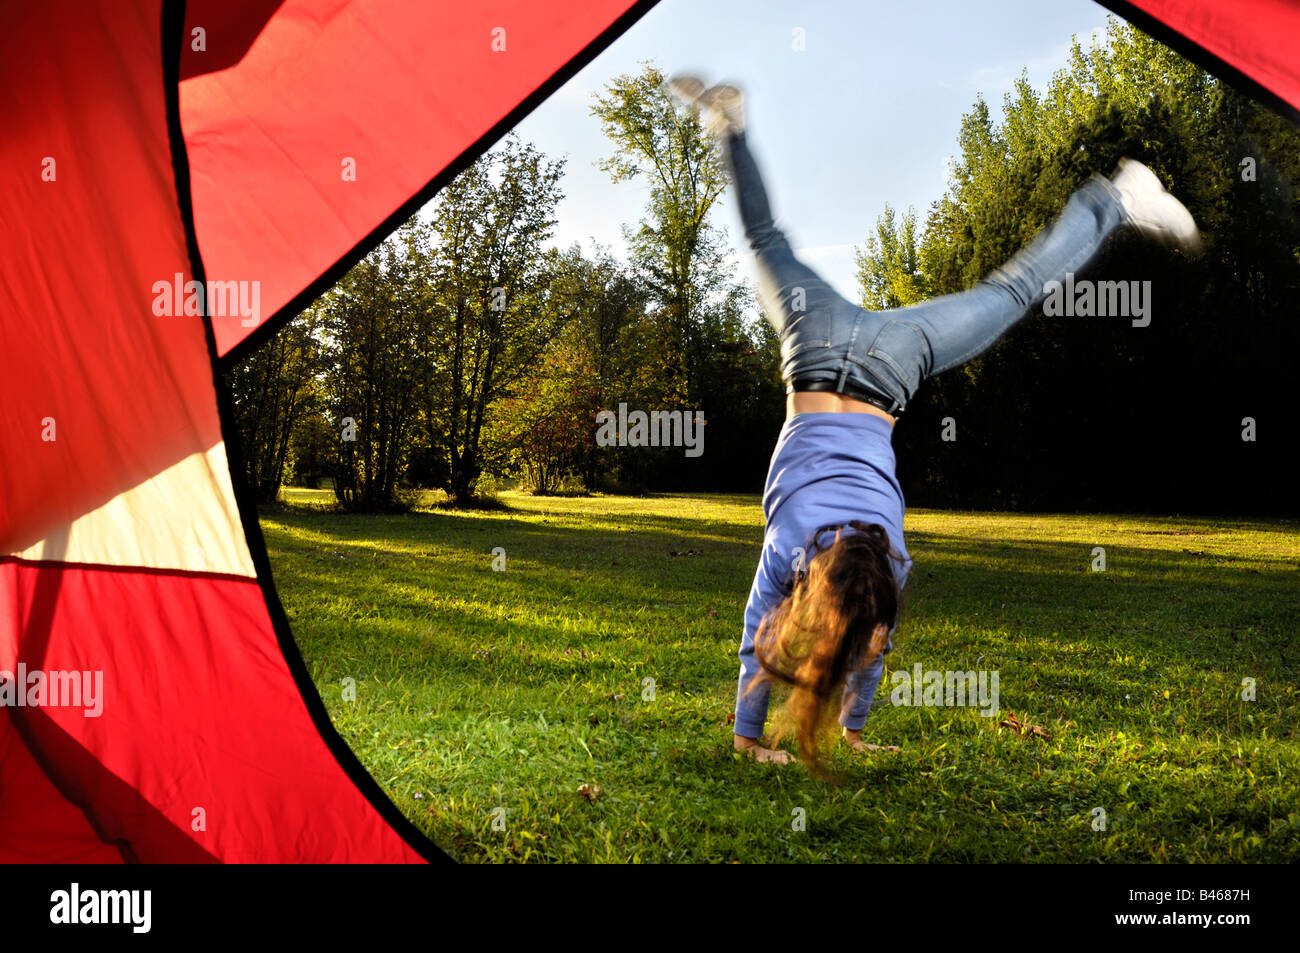 Young woman doing cartwheel Stock Photo